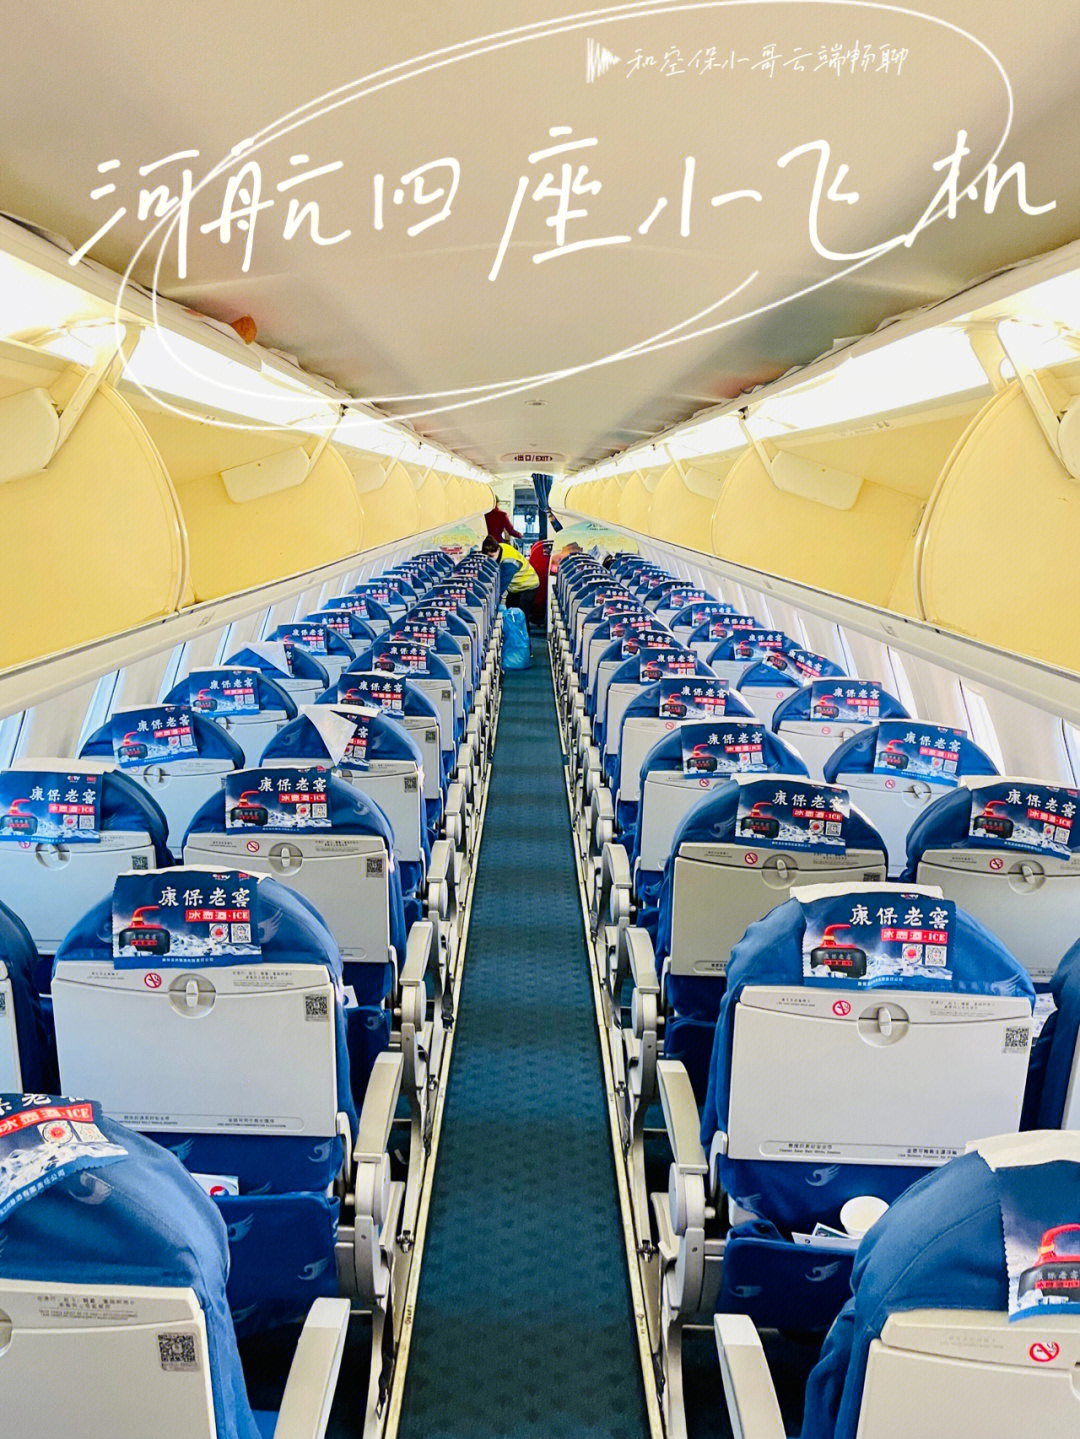 坐到了国内2 2民航客机机型: 巴航工业e190小型客机 9793座位: 98